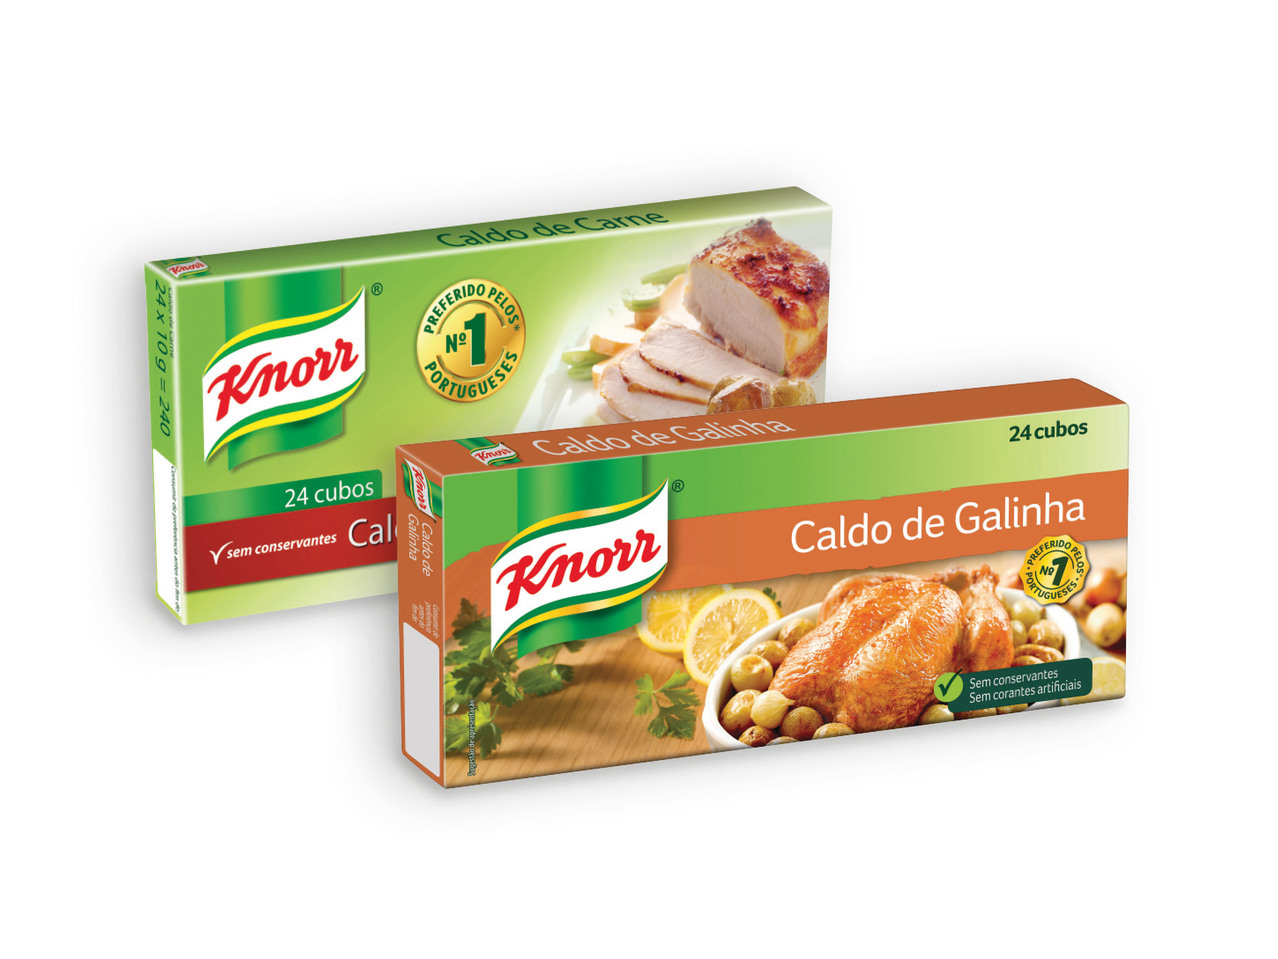 KNORR(R) Caldo de Carne / Galinha